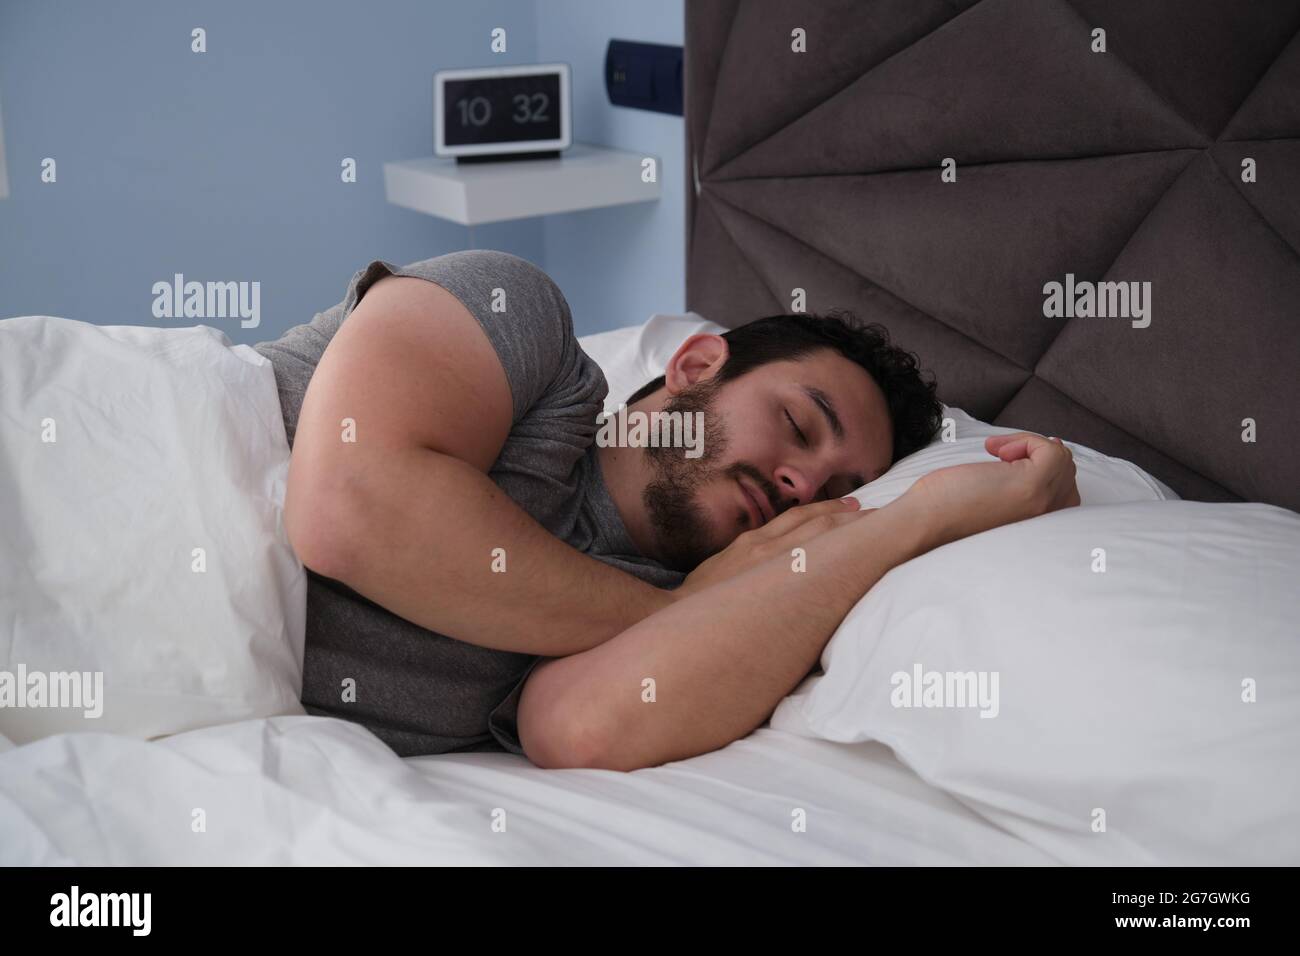 Junger latein, der am späten Morgen im Bett schlief. Digitale Uhr im  Hintergrund Stockfotografie - Alamy